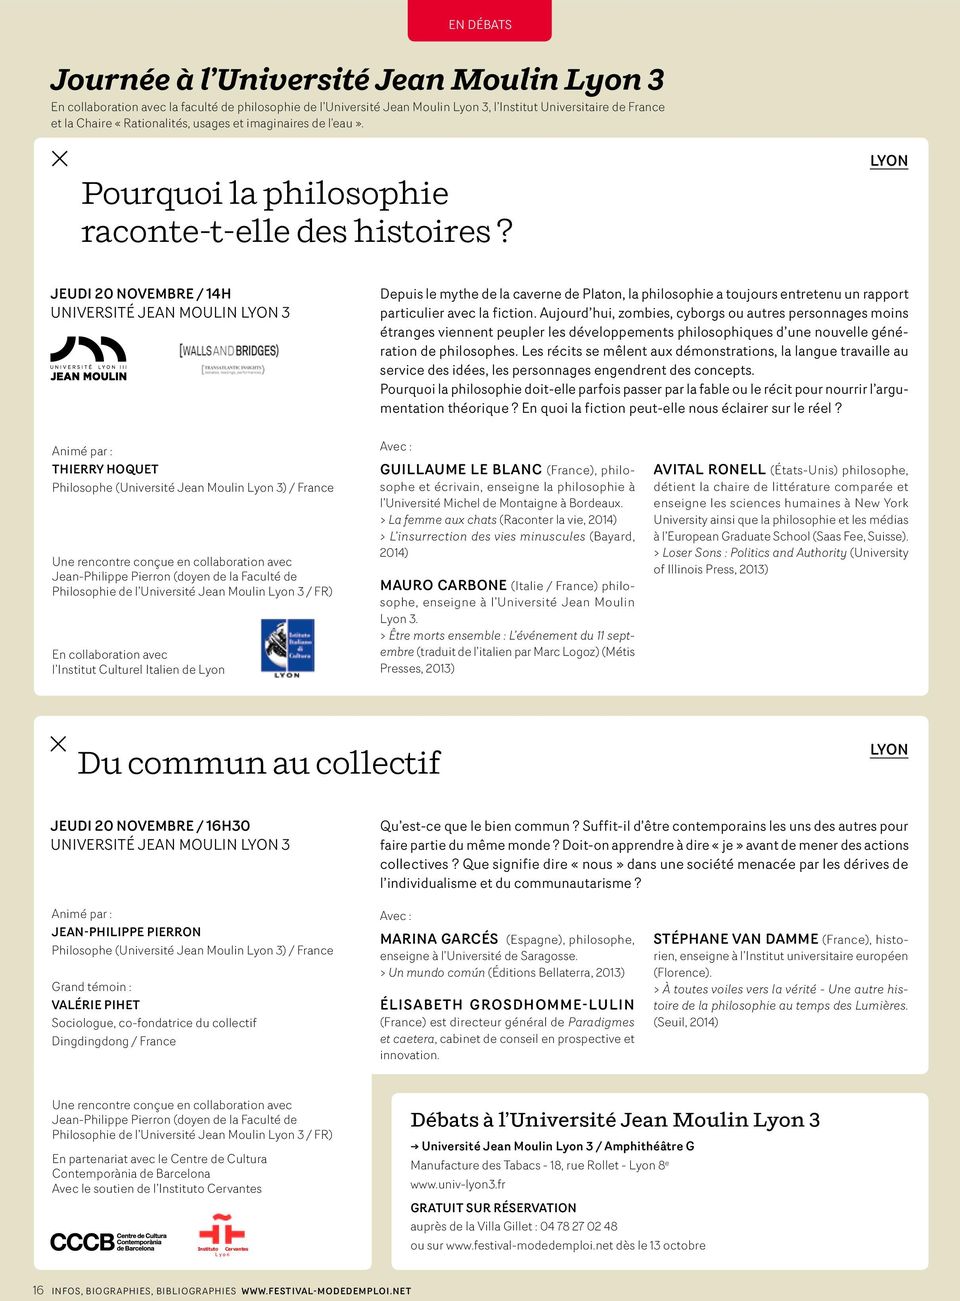 LYON JEUDI 20 novembre / 14H Université Jean Moulin 3 Depuis le mythe de la caverne de Platon, la philosophie a toujours entretenu un rapport particulier avec la fiction.